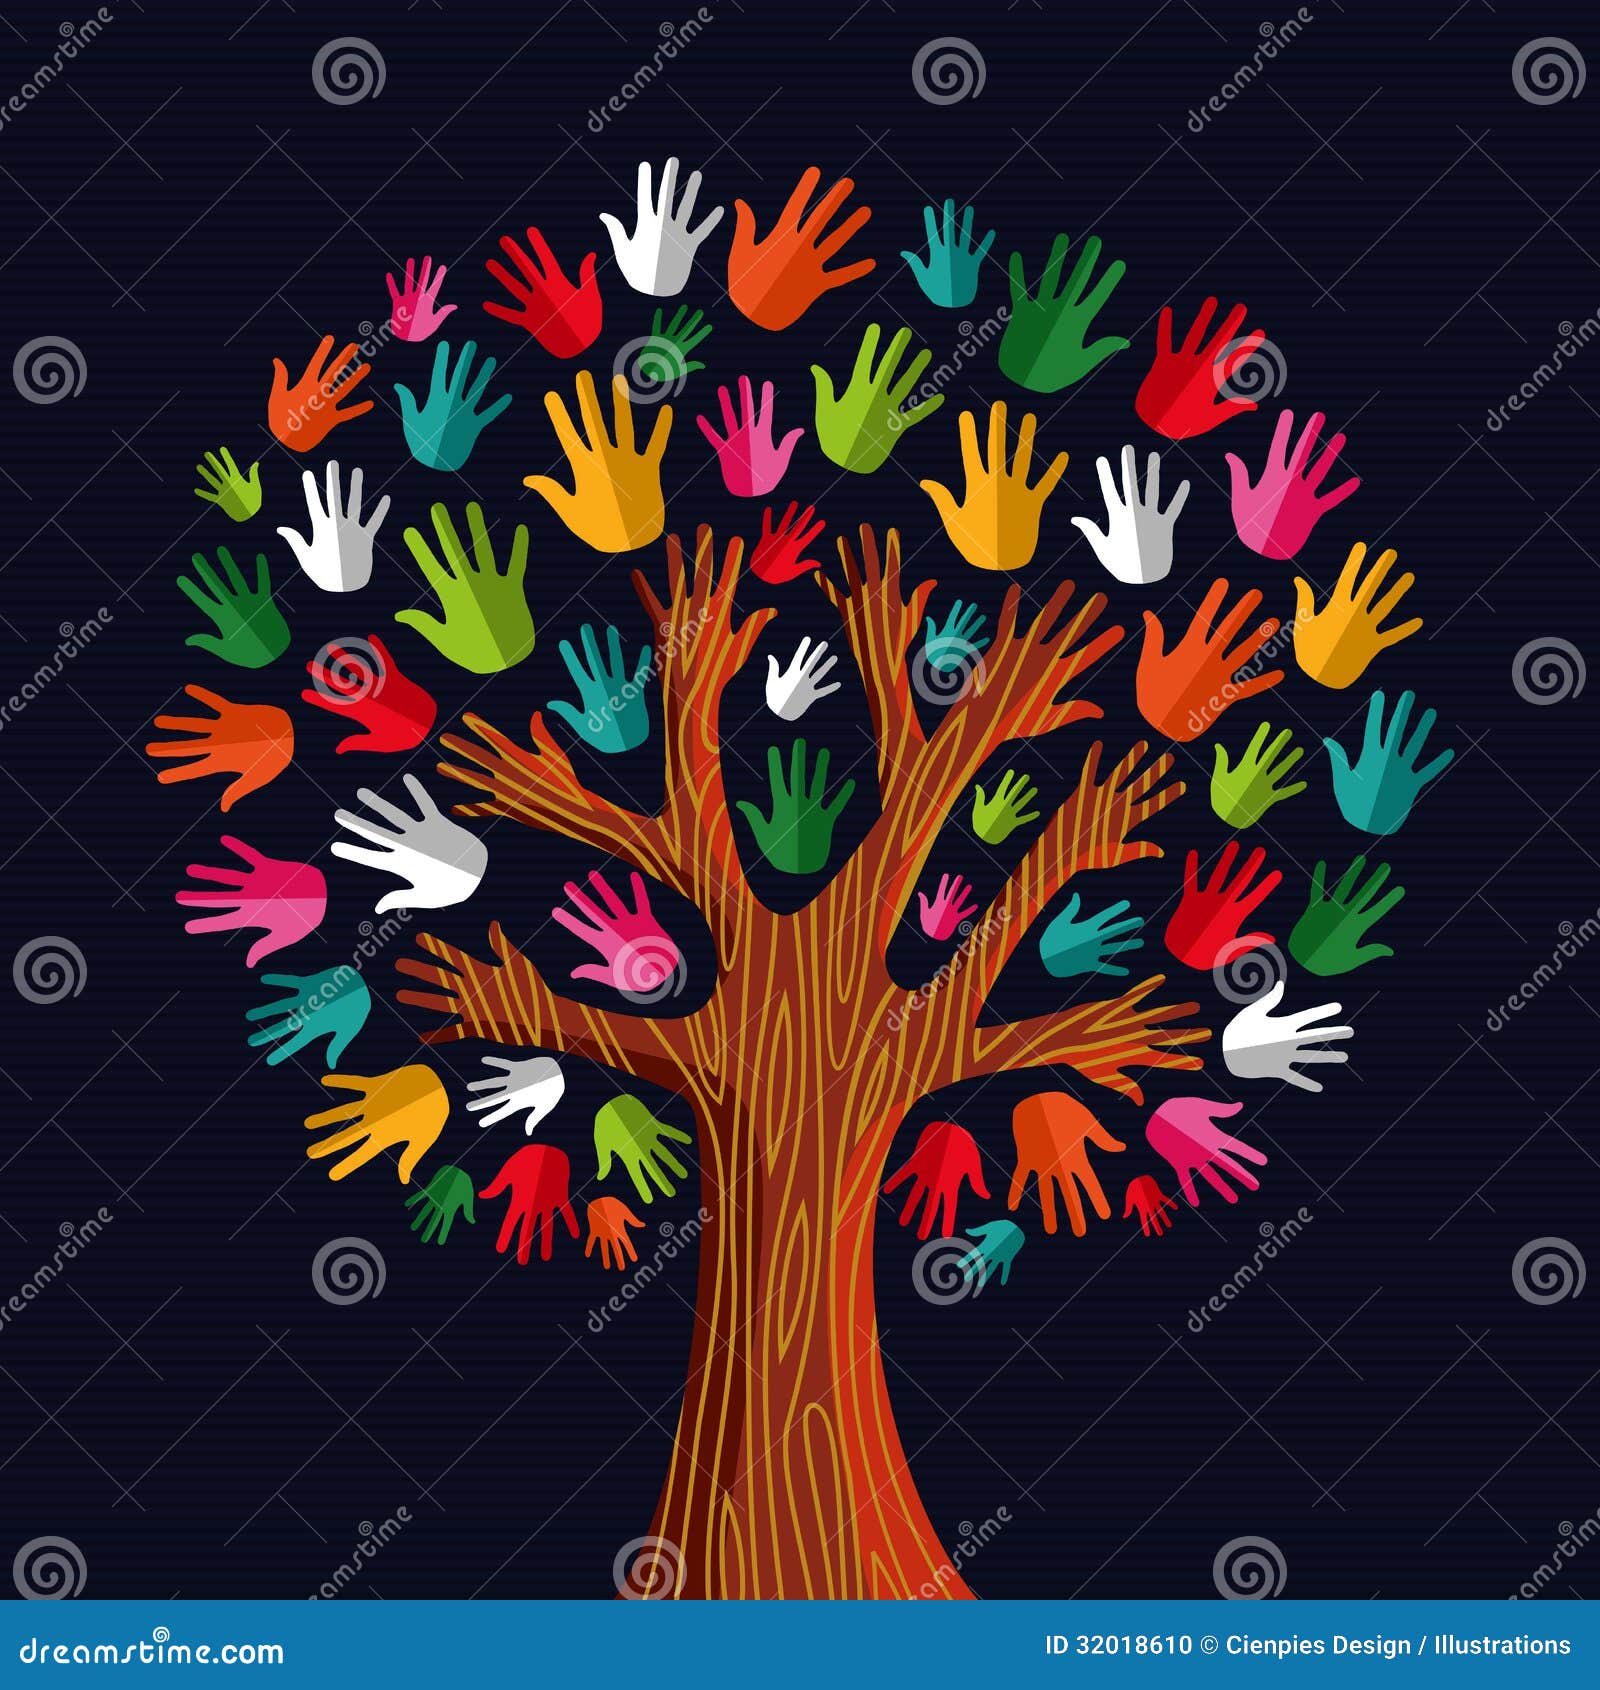 diversity tree hands